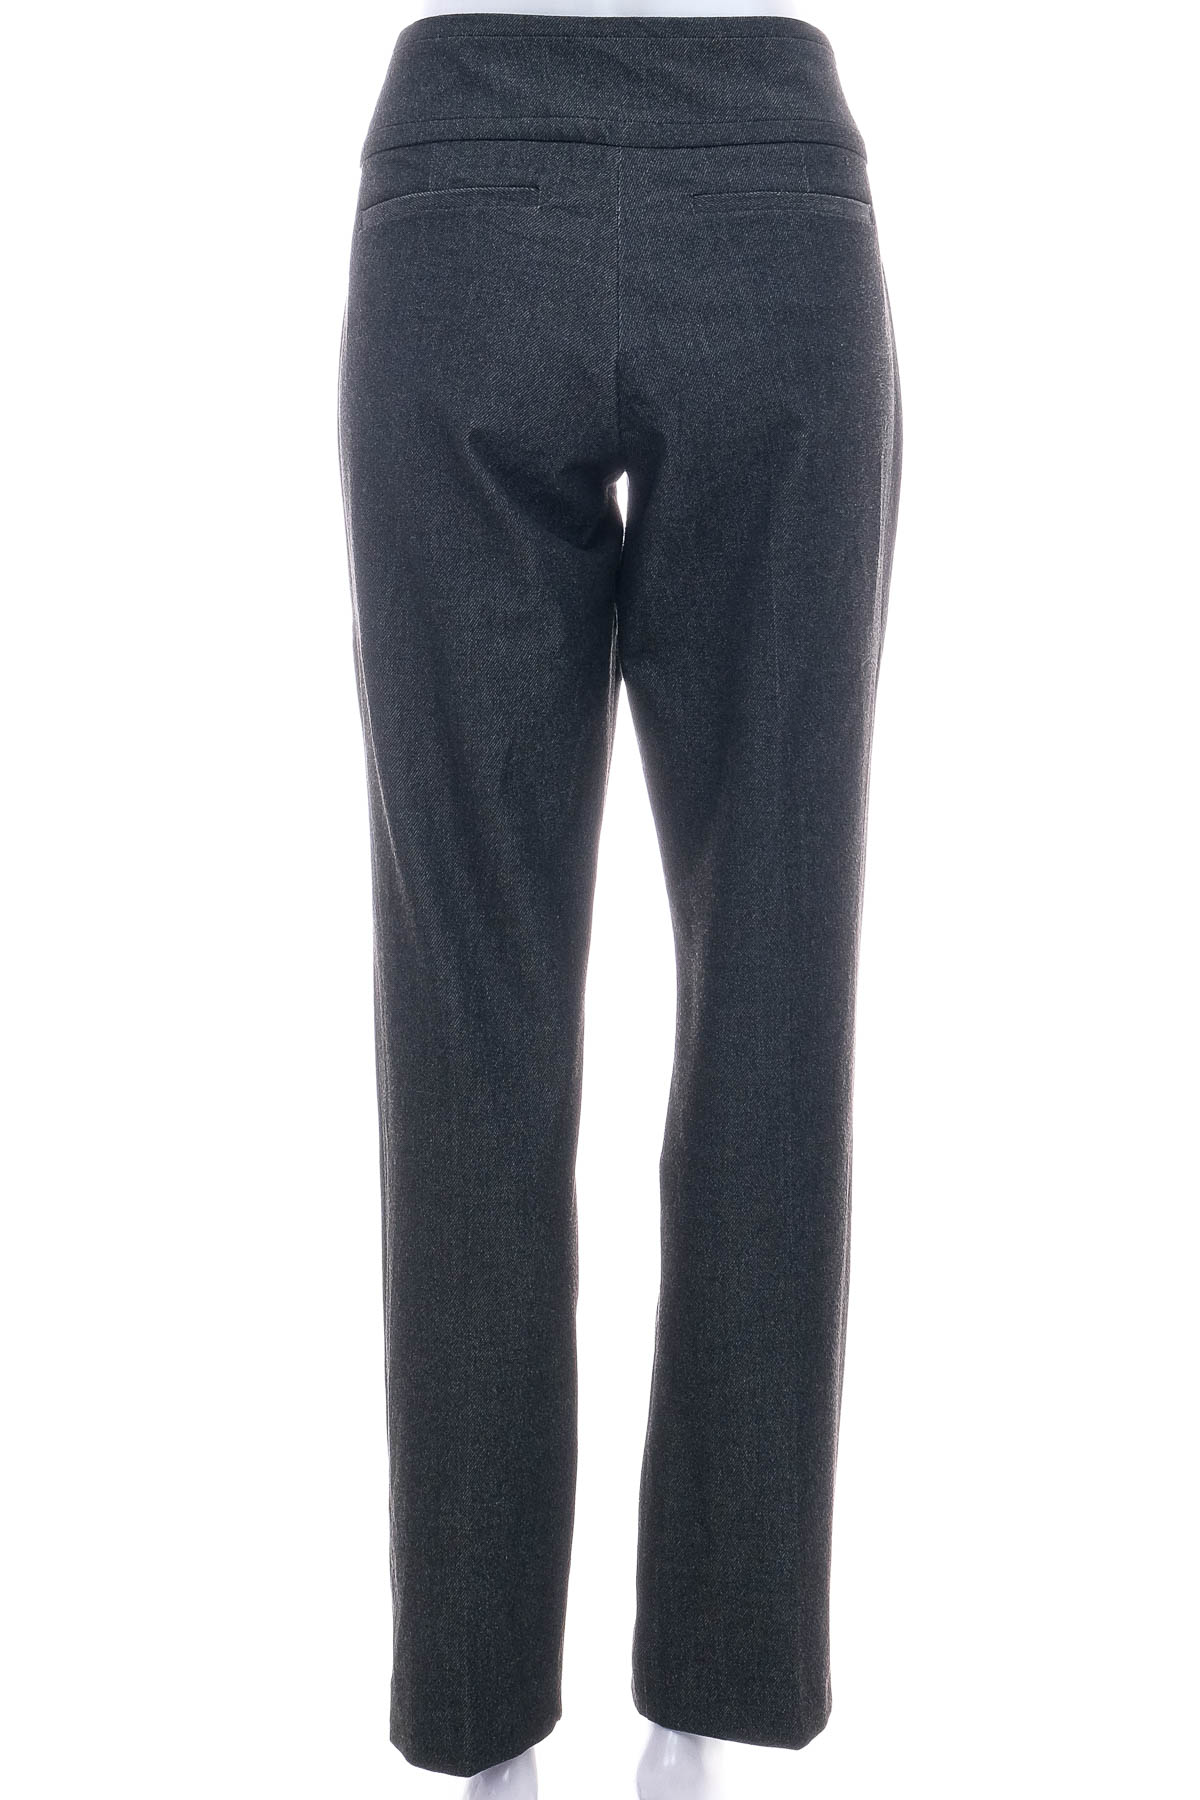 Spodnie damskie - New York & Company - 1